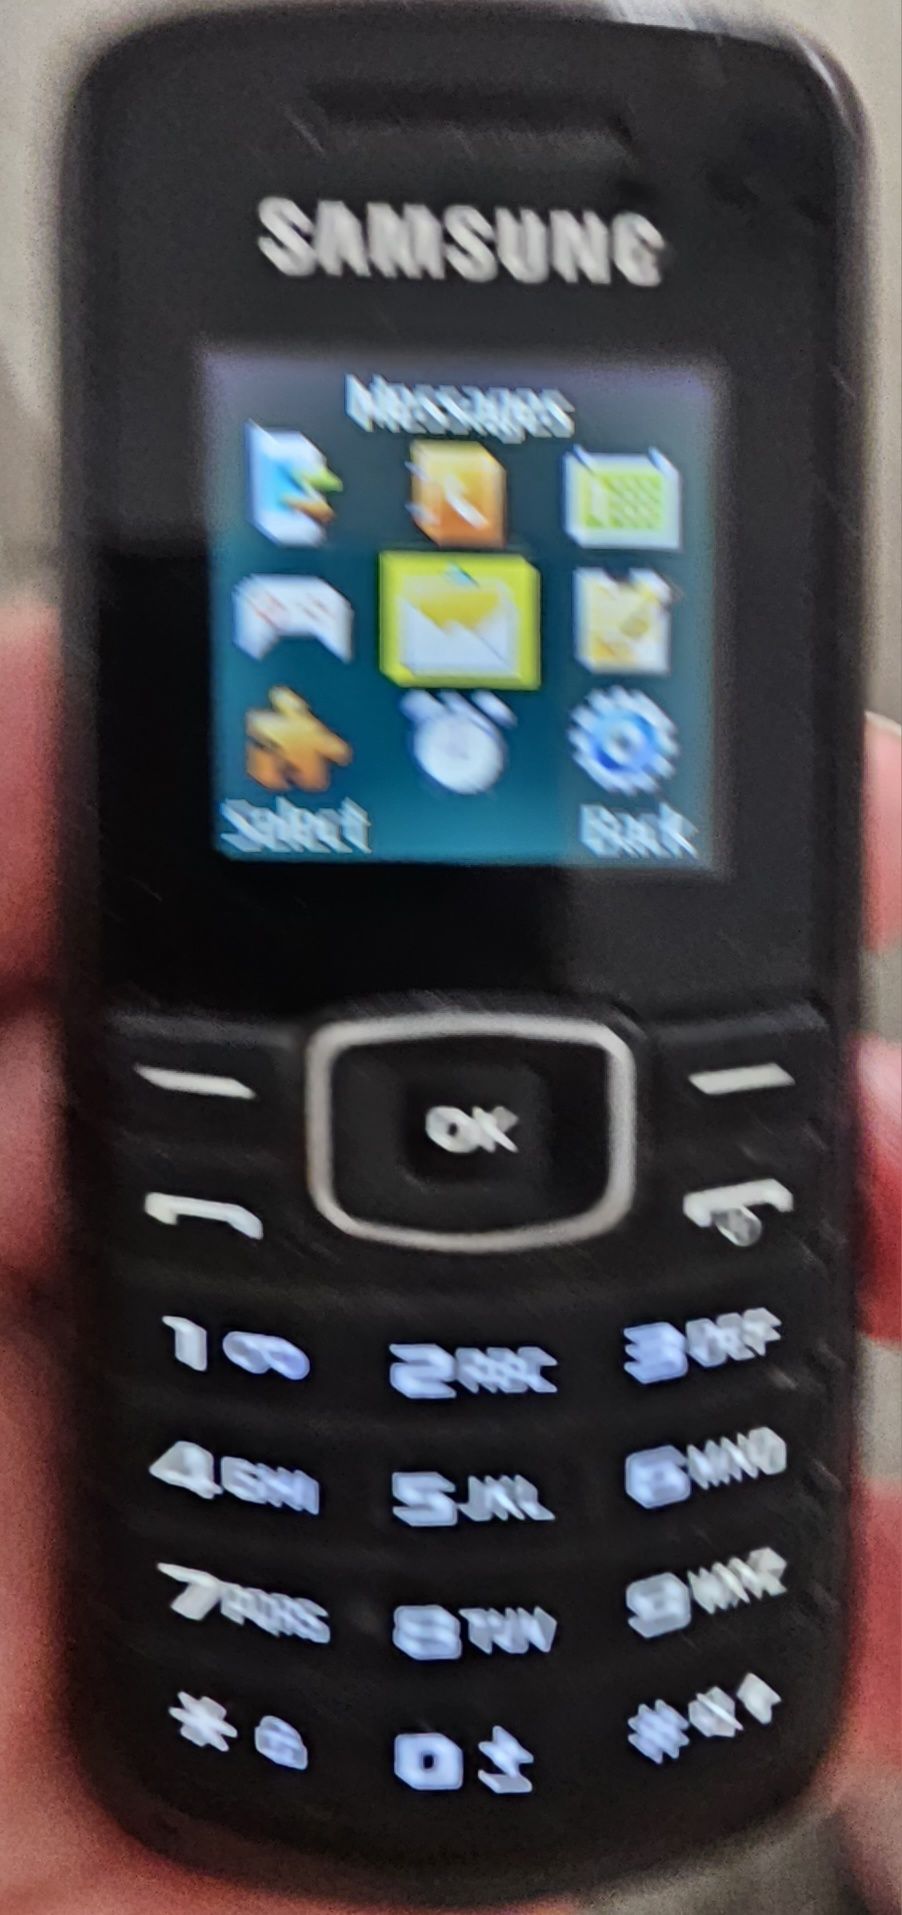 Sprzedam telefon Samsung GT-E1080W.